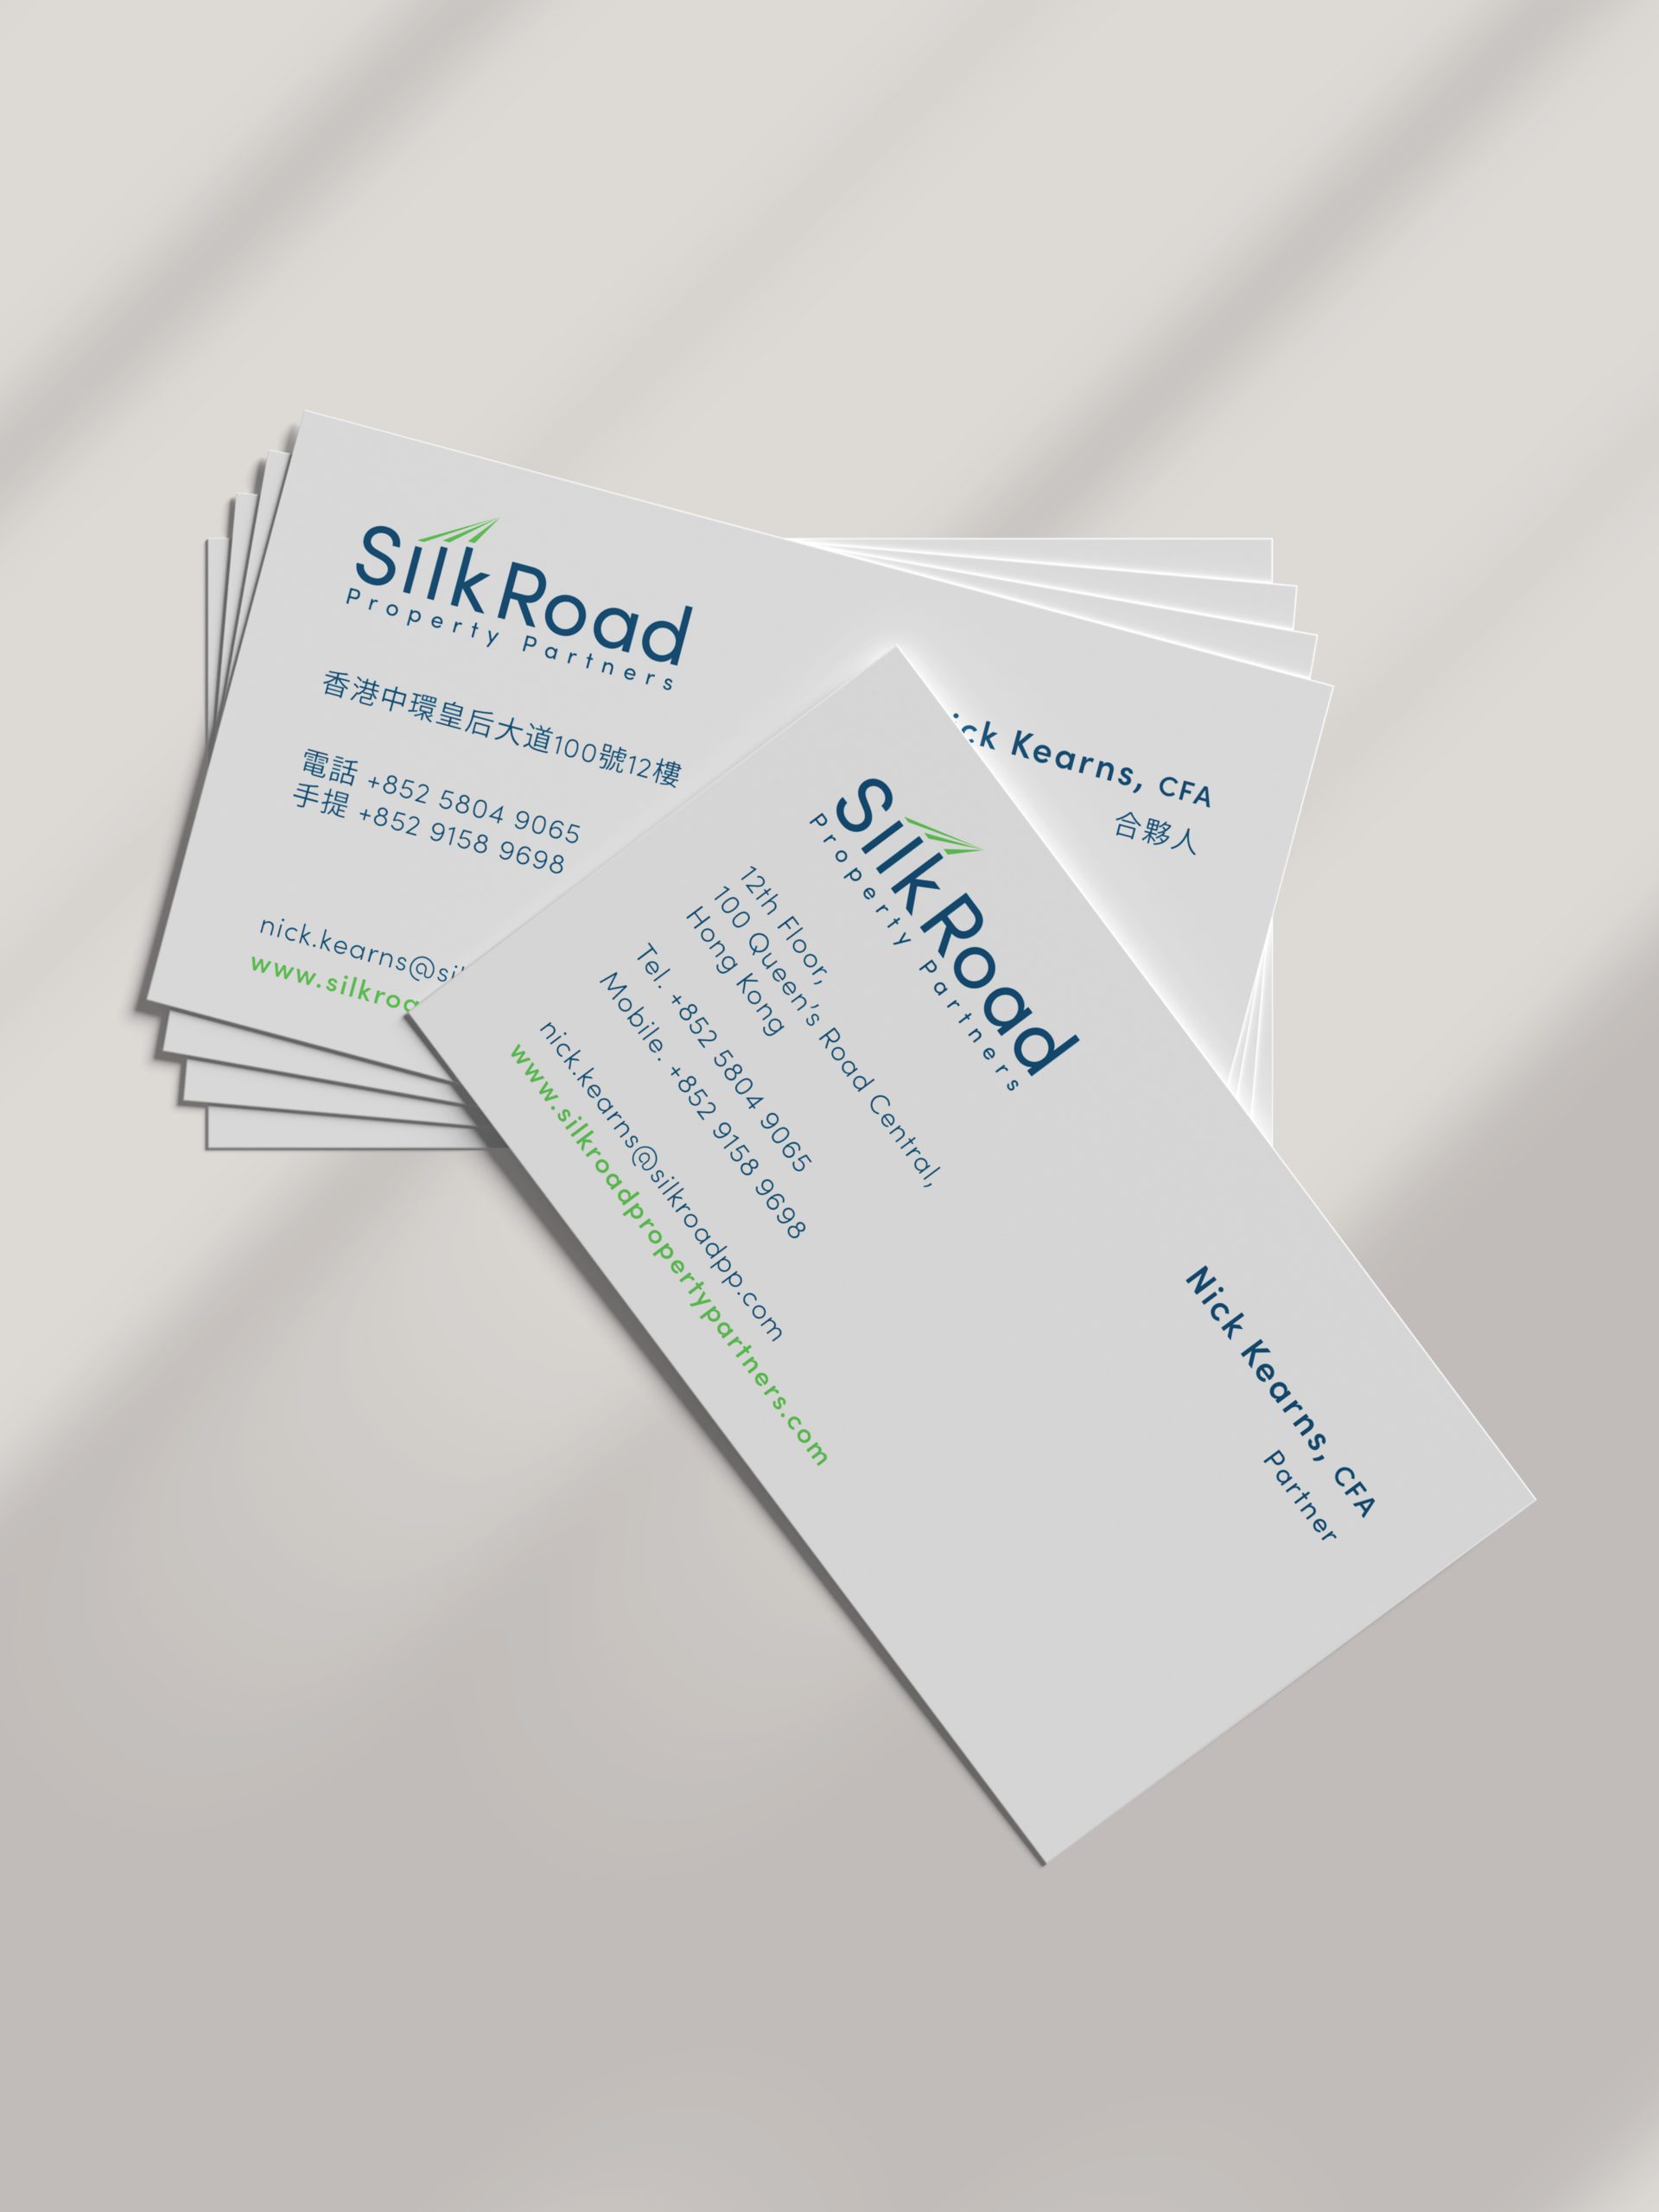 Silkroad business card design